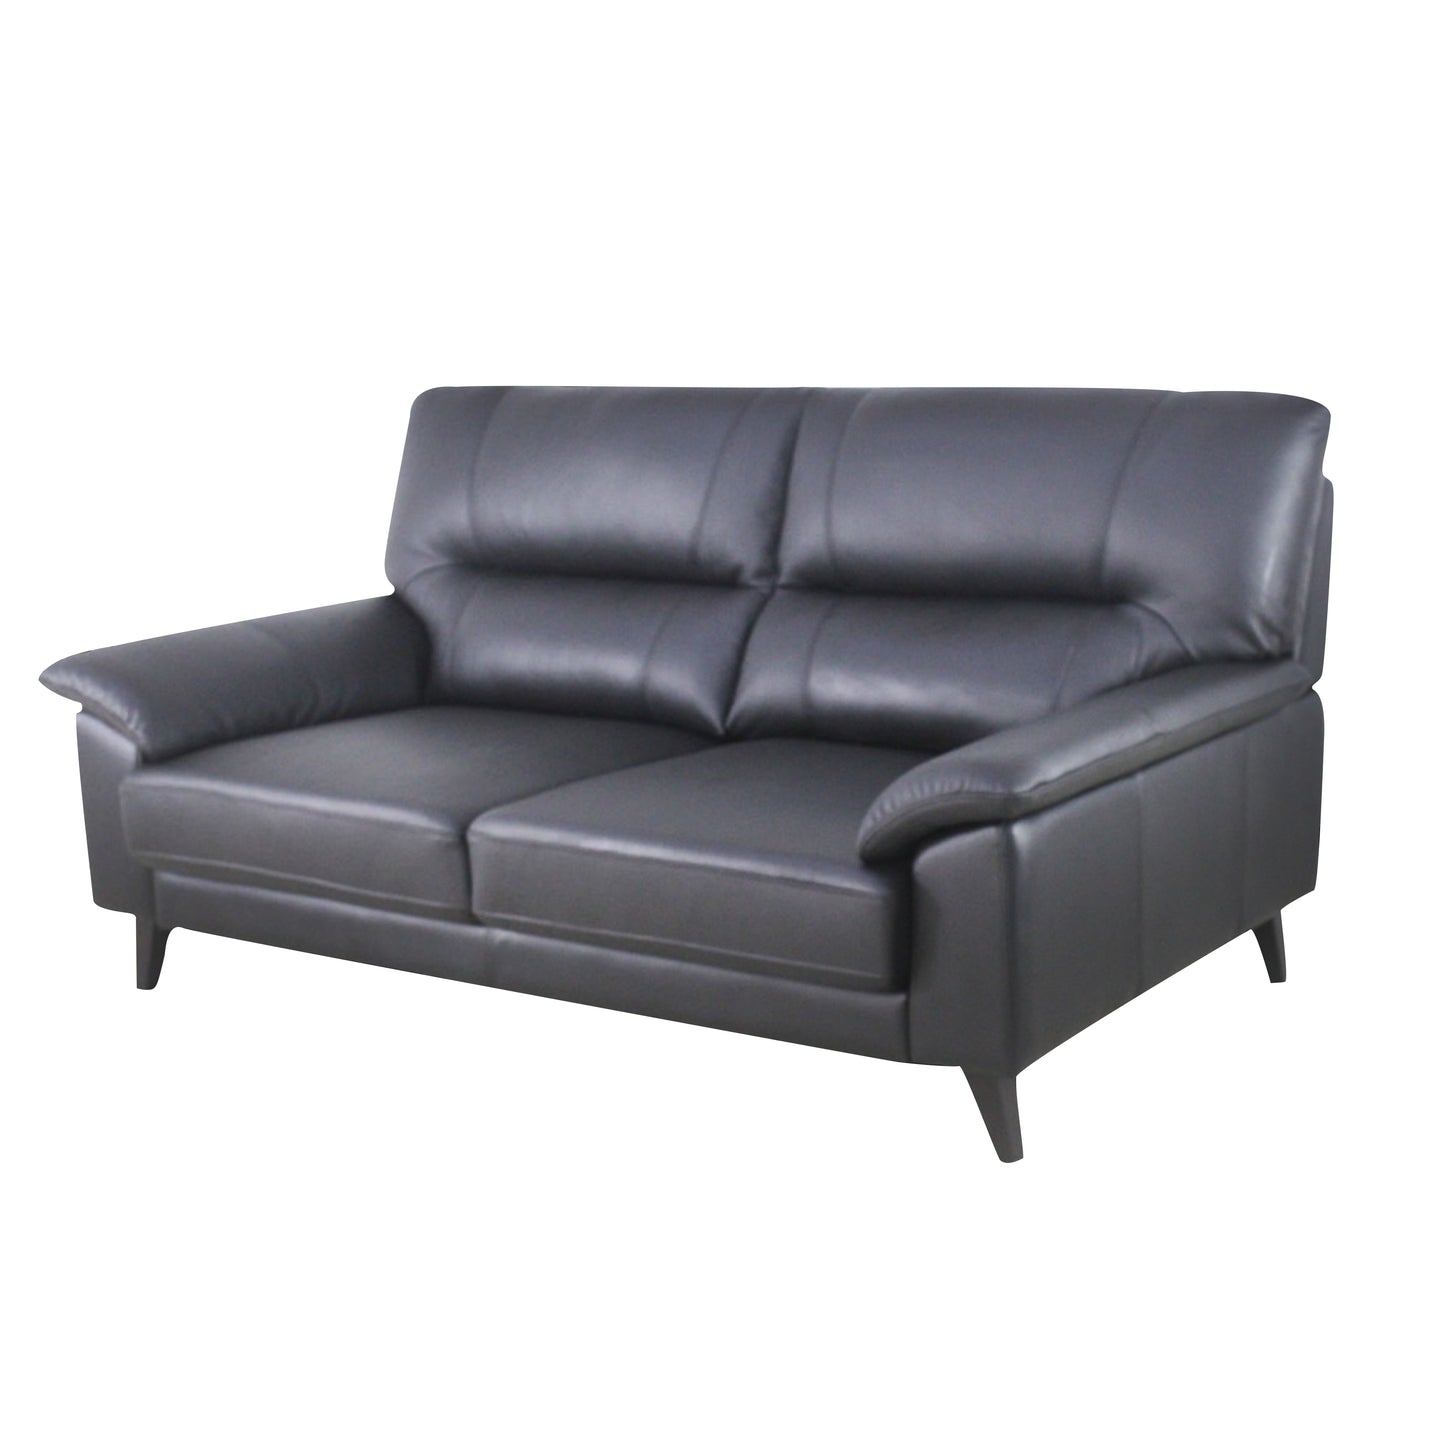 Deluxe series sofa 01932